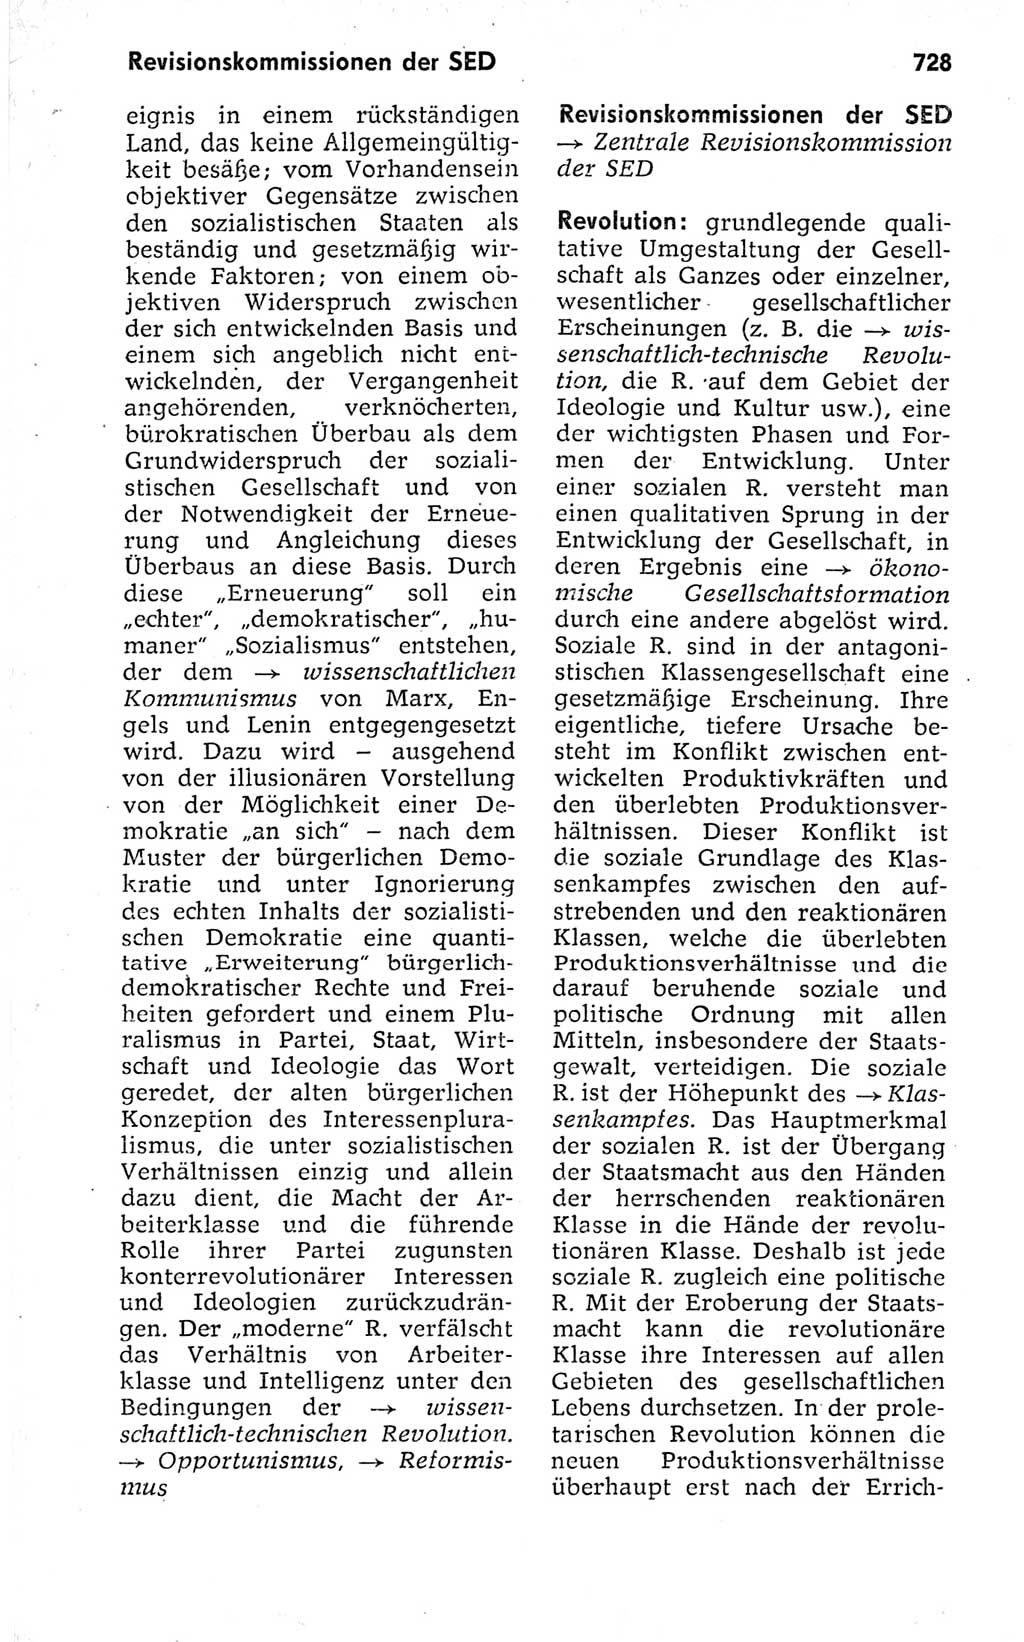 Kleines politisches Wörterbuch [Deutsche Demokratische Republik (DDR)] 1973, Seite 728 (Kl. pol. Wb. DDR 1973, S. 728)